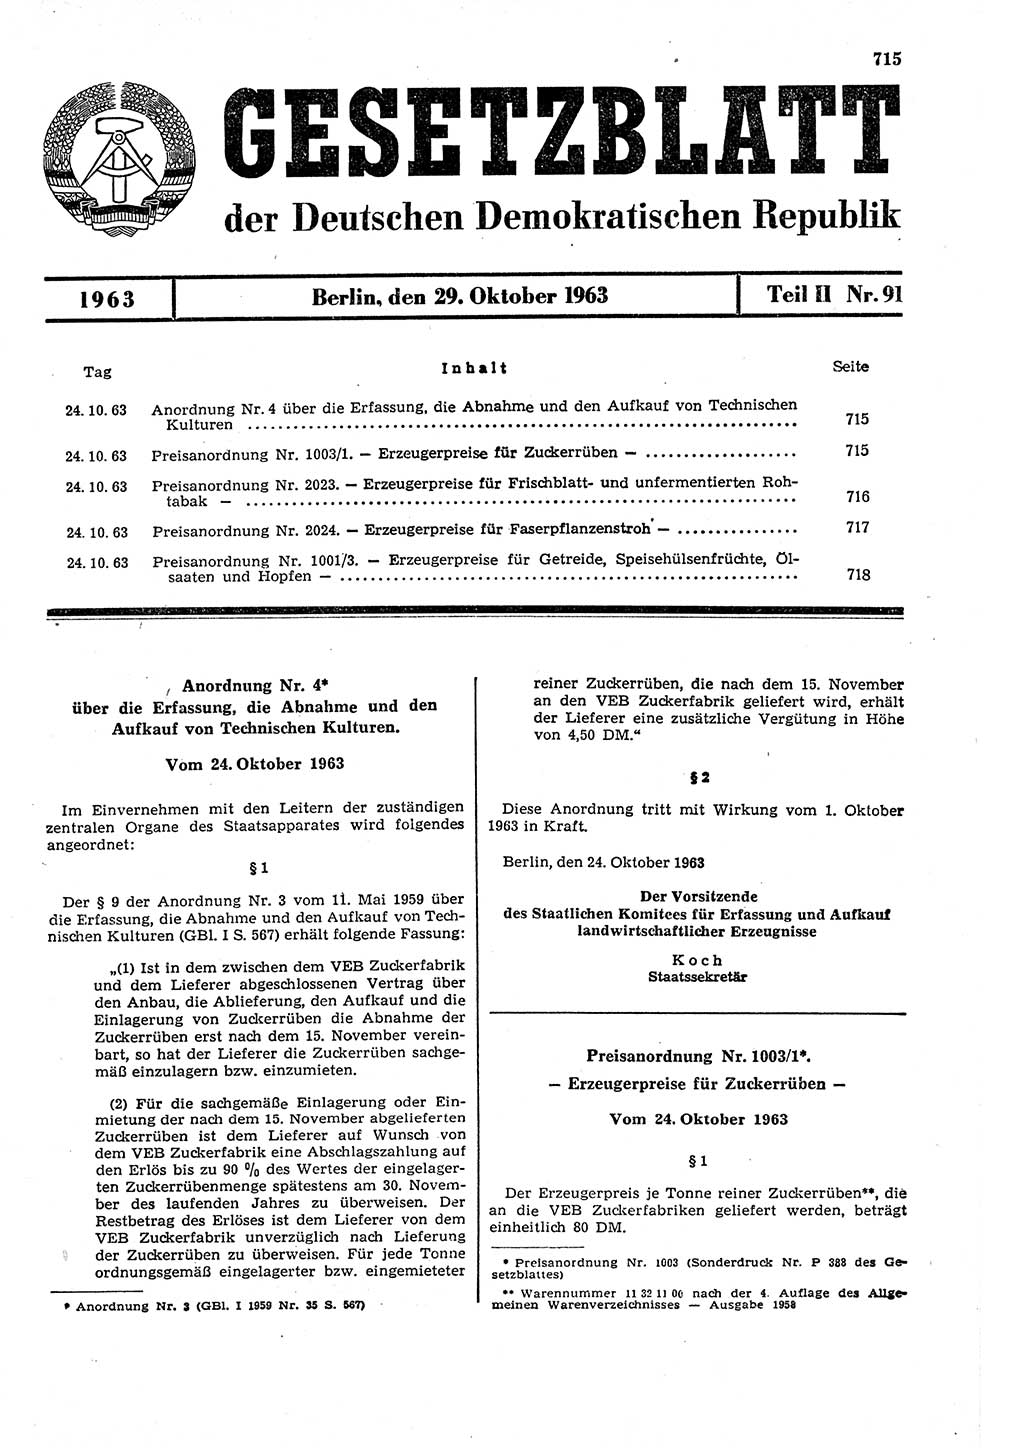 Gesetzblatt (GBl.) der Deutschen Demokratischen Republik (DDR) Teil ⅠⅠ 1963, Seite 715 (GBl. DDR ⅠⅠ 1963, S. 715)